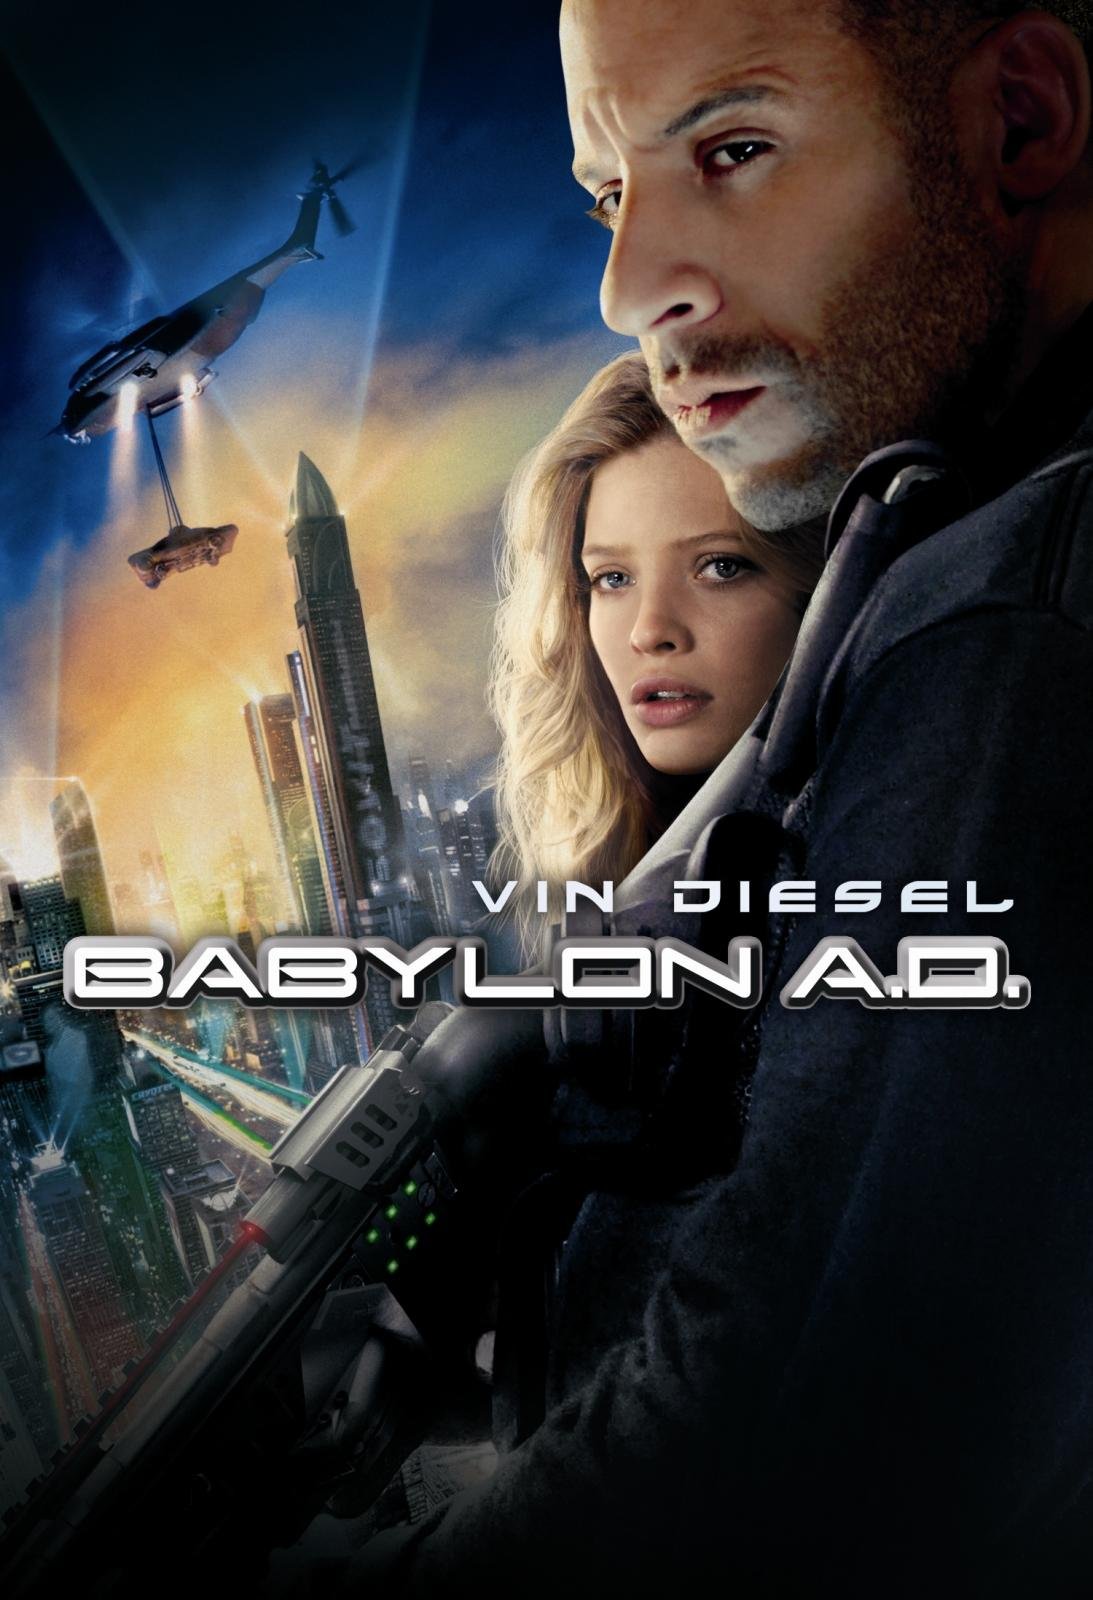 Babylon A.D. [HD] (2008)